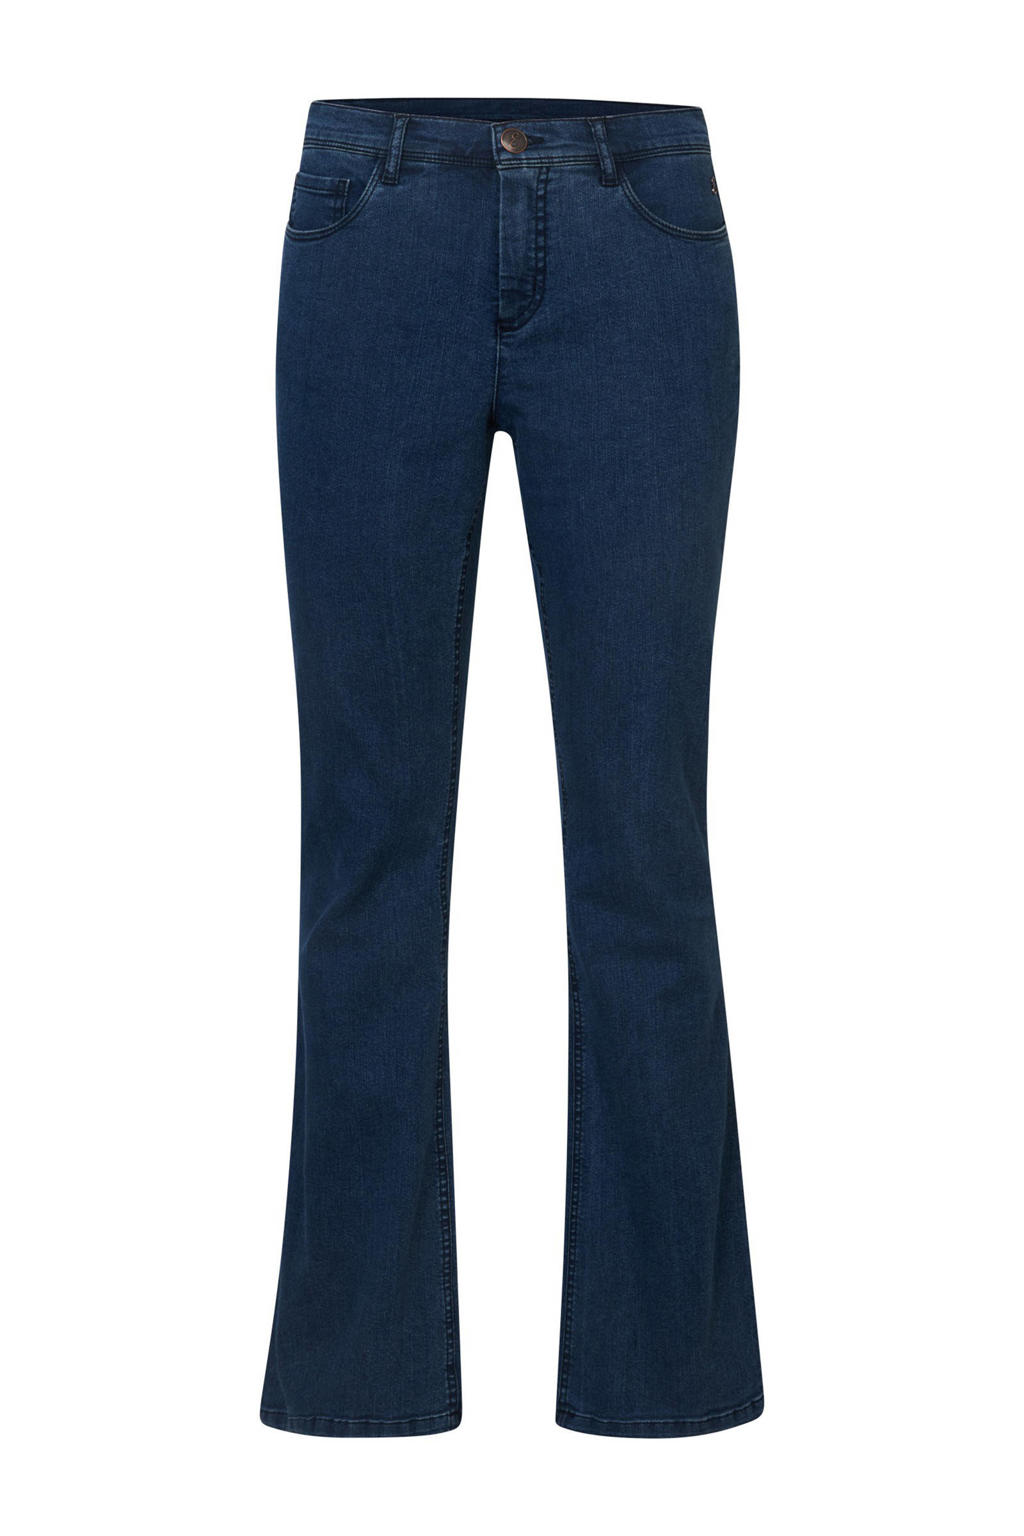 Blauwe dames Miss Etam flared jeans Jazz van stretchdenim met regular waist en rits- en knoopsluiting